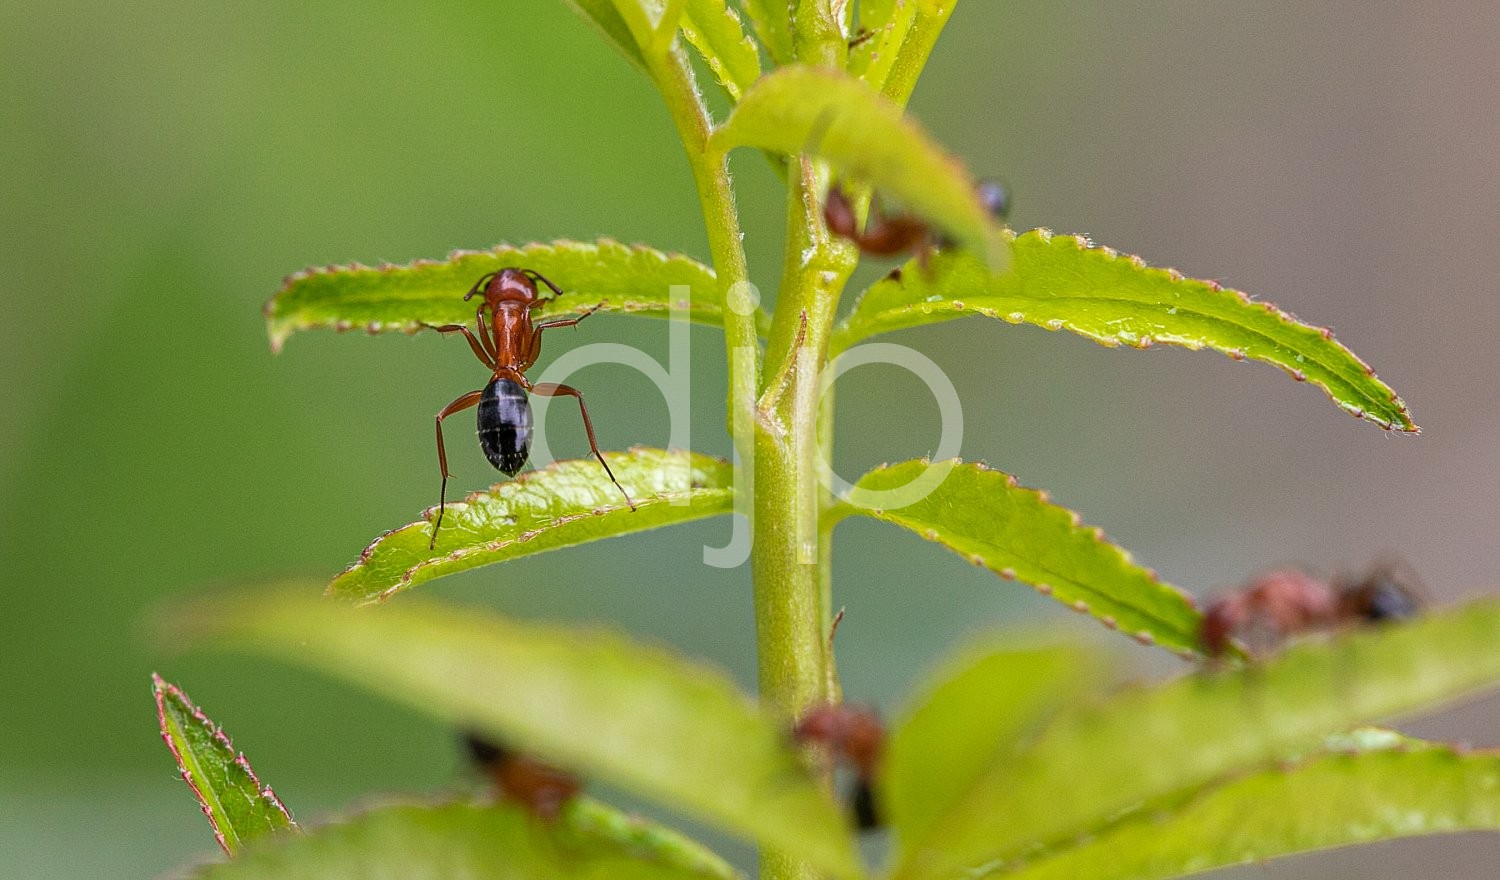 D Jones Photography, black, djonesphoto, green, macro, personal, red, ants